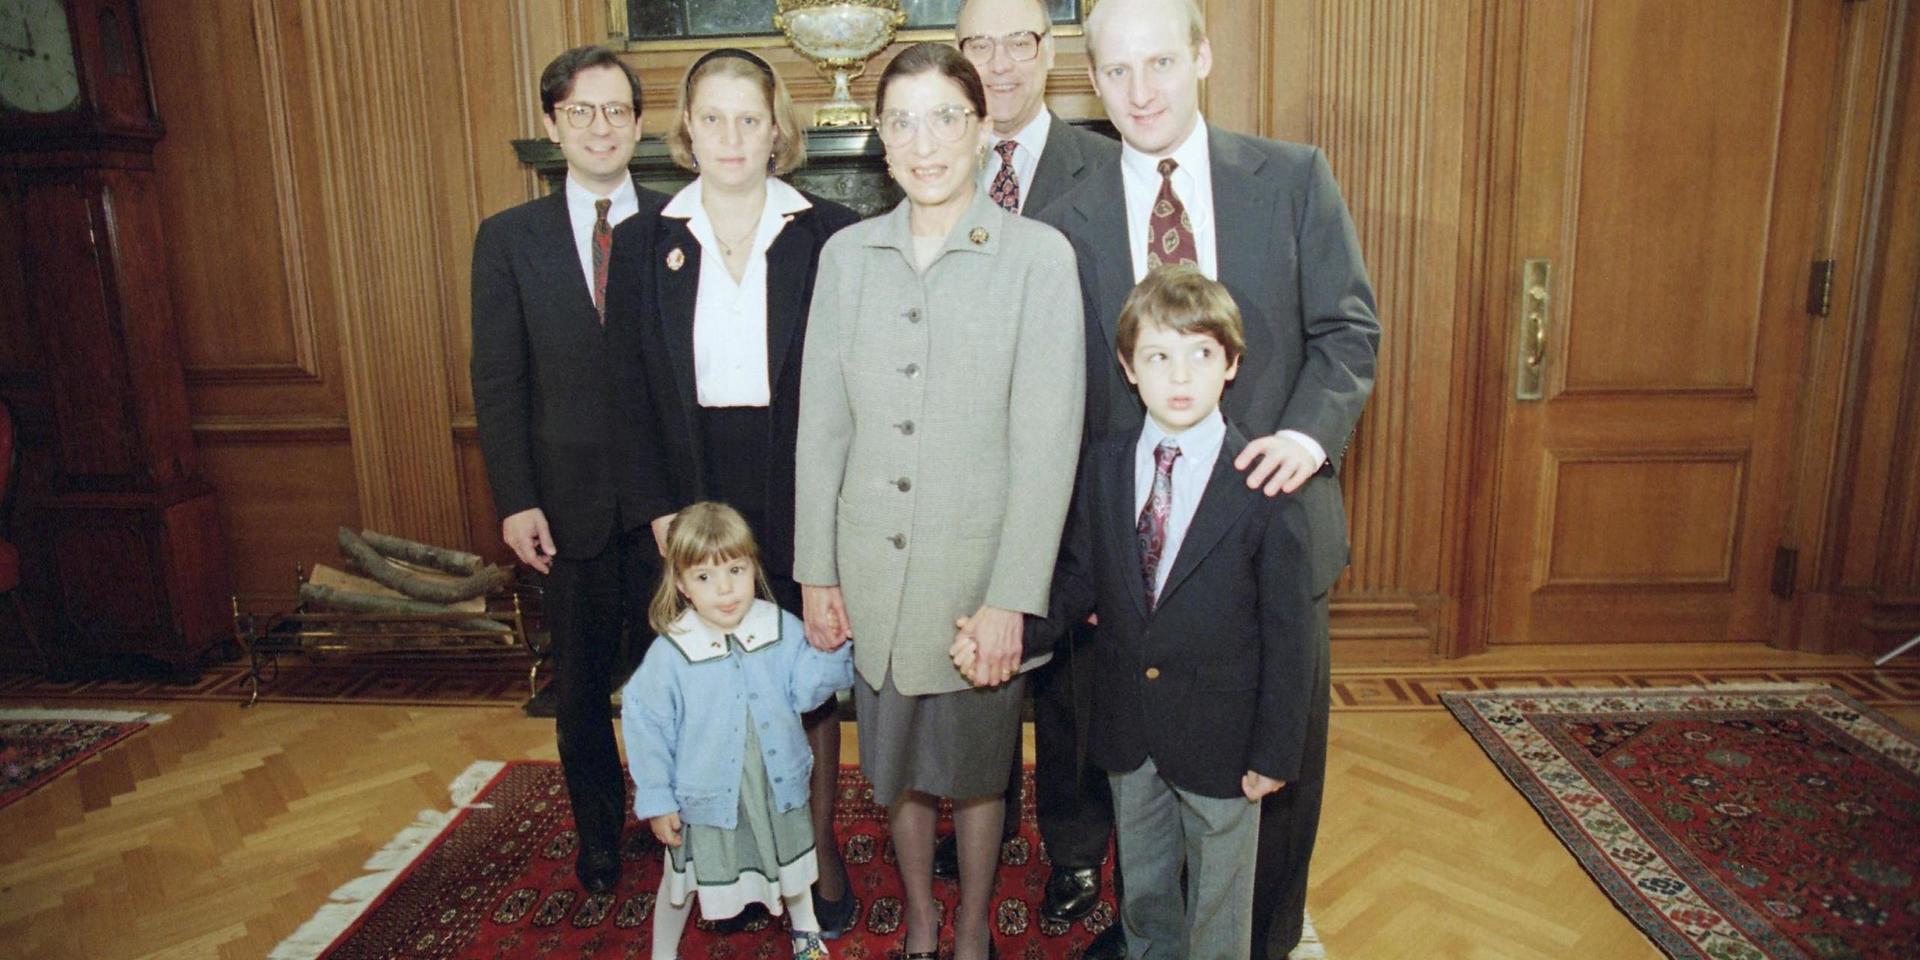 Ruth Bader Ginsburg med sin familj 1993 – svärsonen George Spera, dottern Jane Ginsburg, maken Martin Ginsburg och sonen James Ginsburg. Framför dem står barnbarnen Clara Spera och Paul Spera.